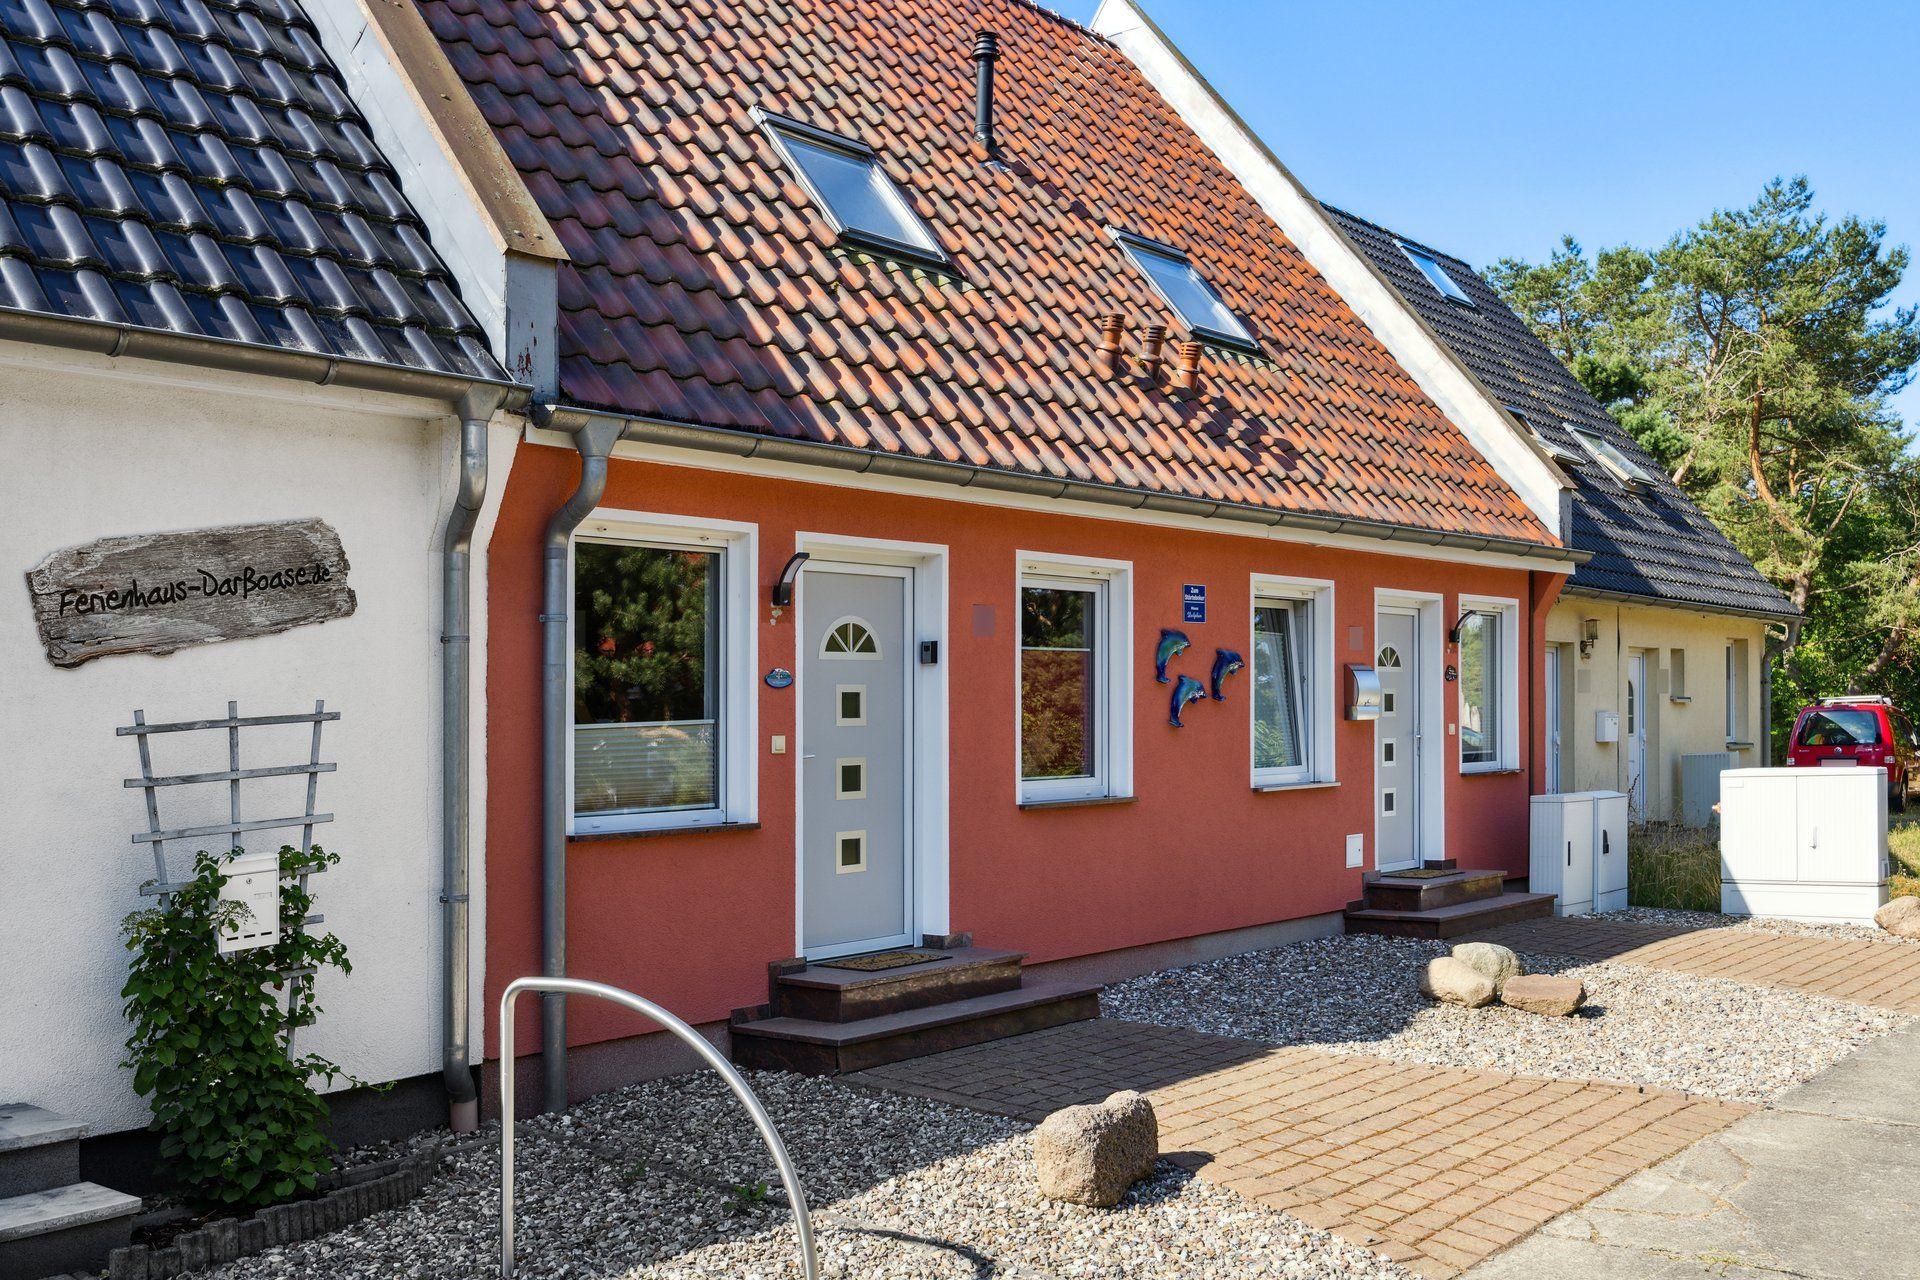 Ferienhaus in Pruchten mit Terrasse, Grill und Gar  in Mecklenburg Vorpommern